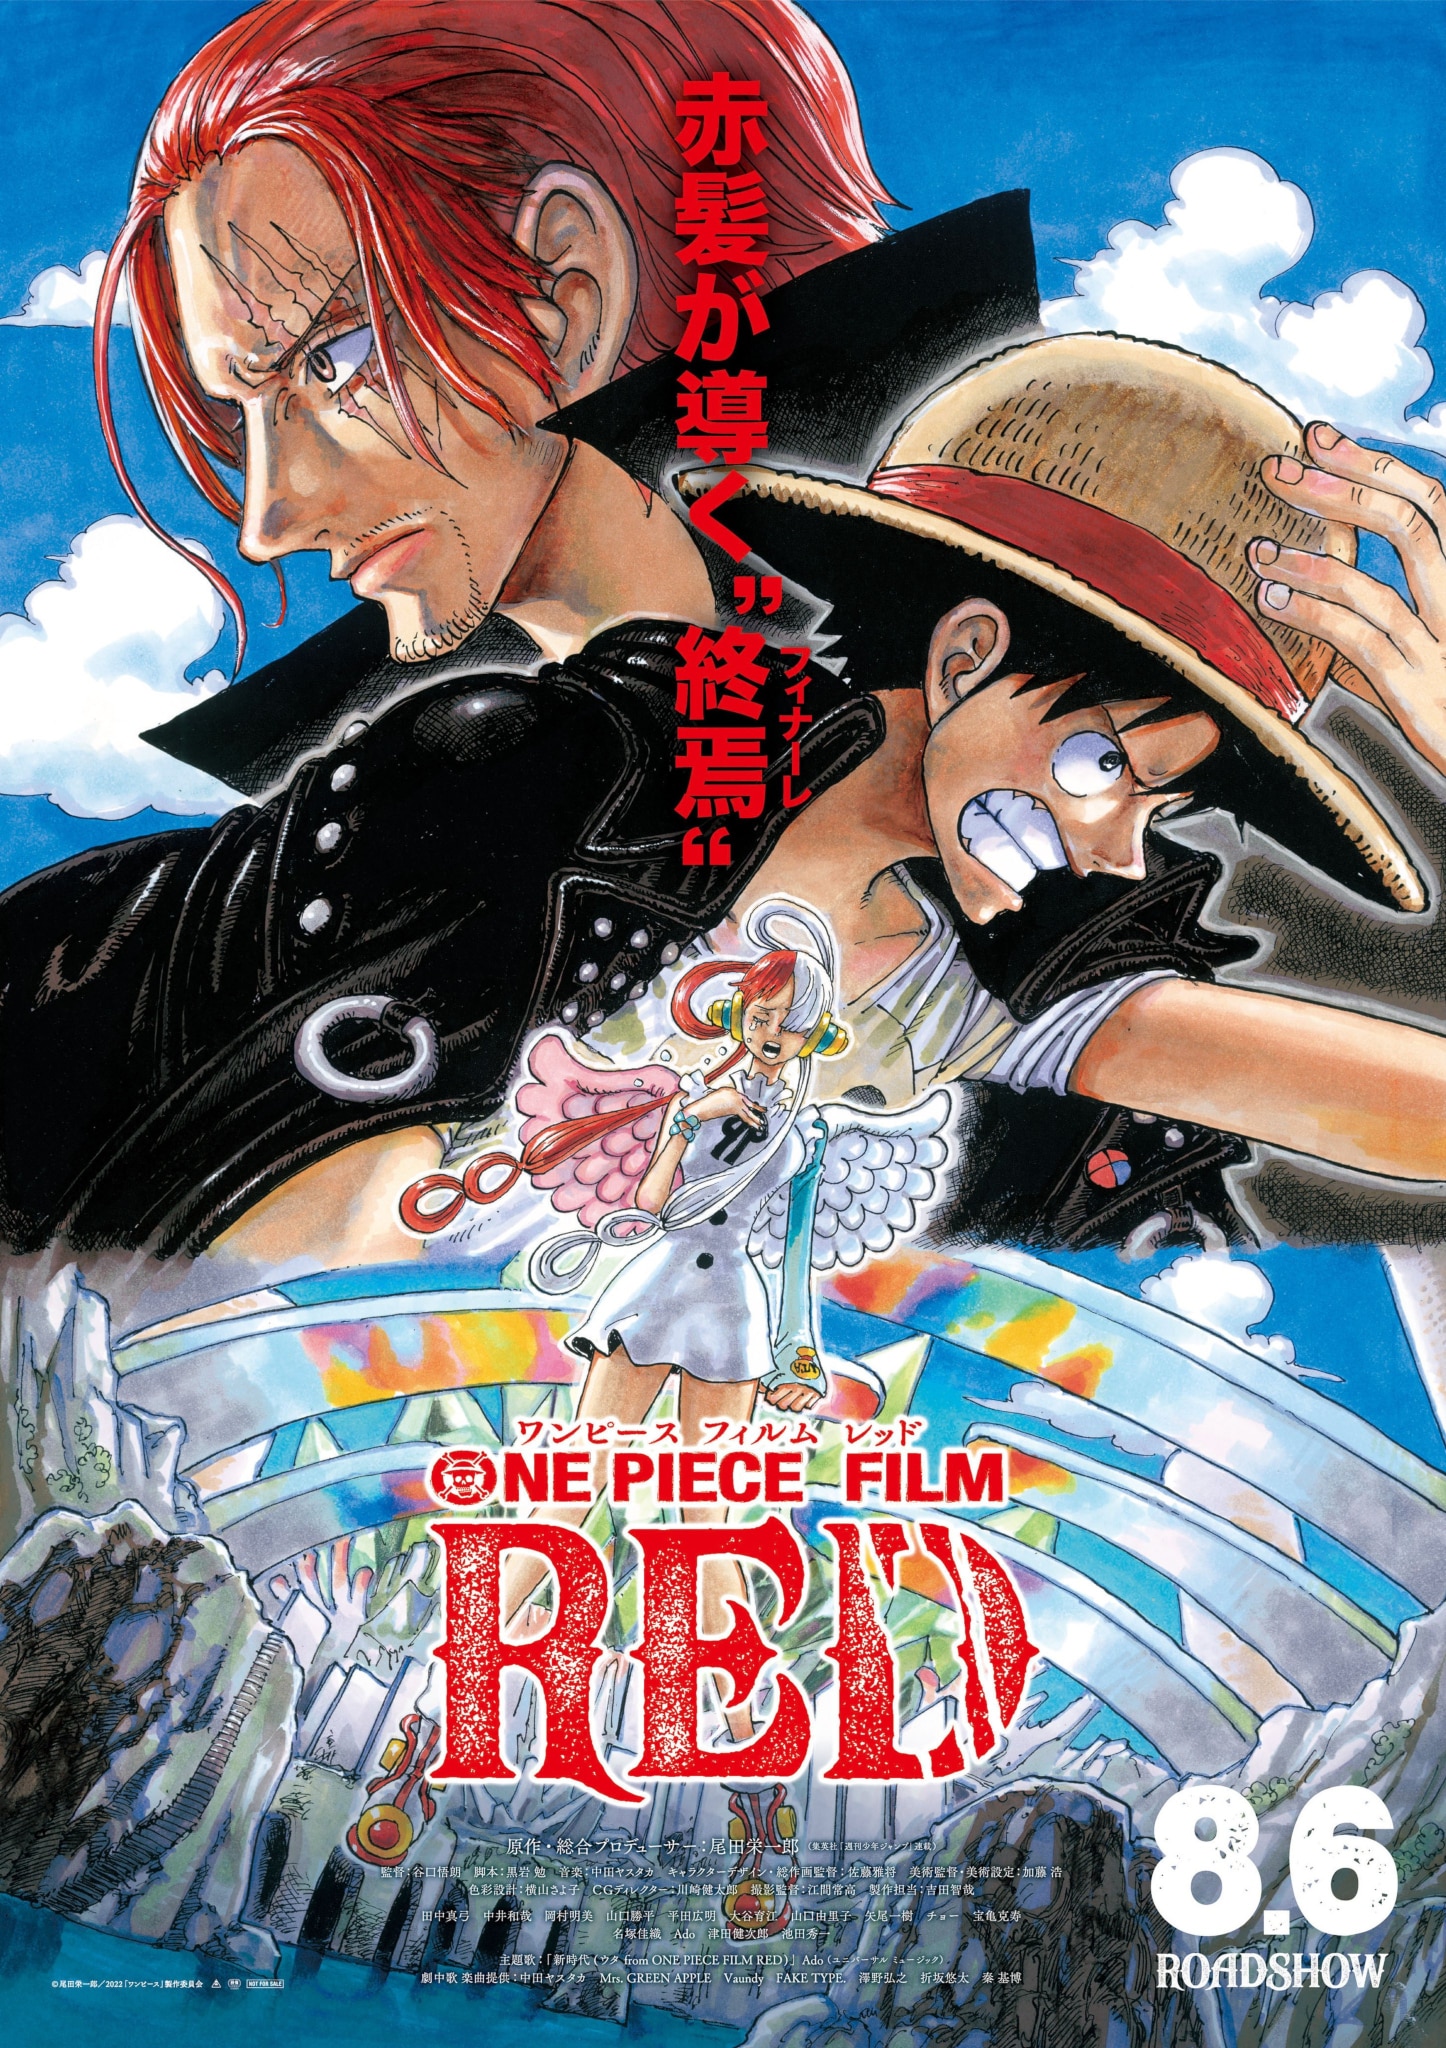 Quand One Piece Red sera sur ADN ?